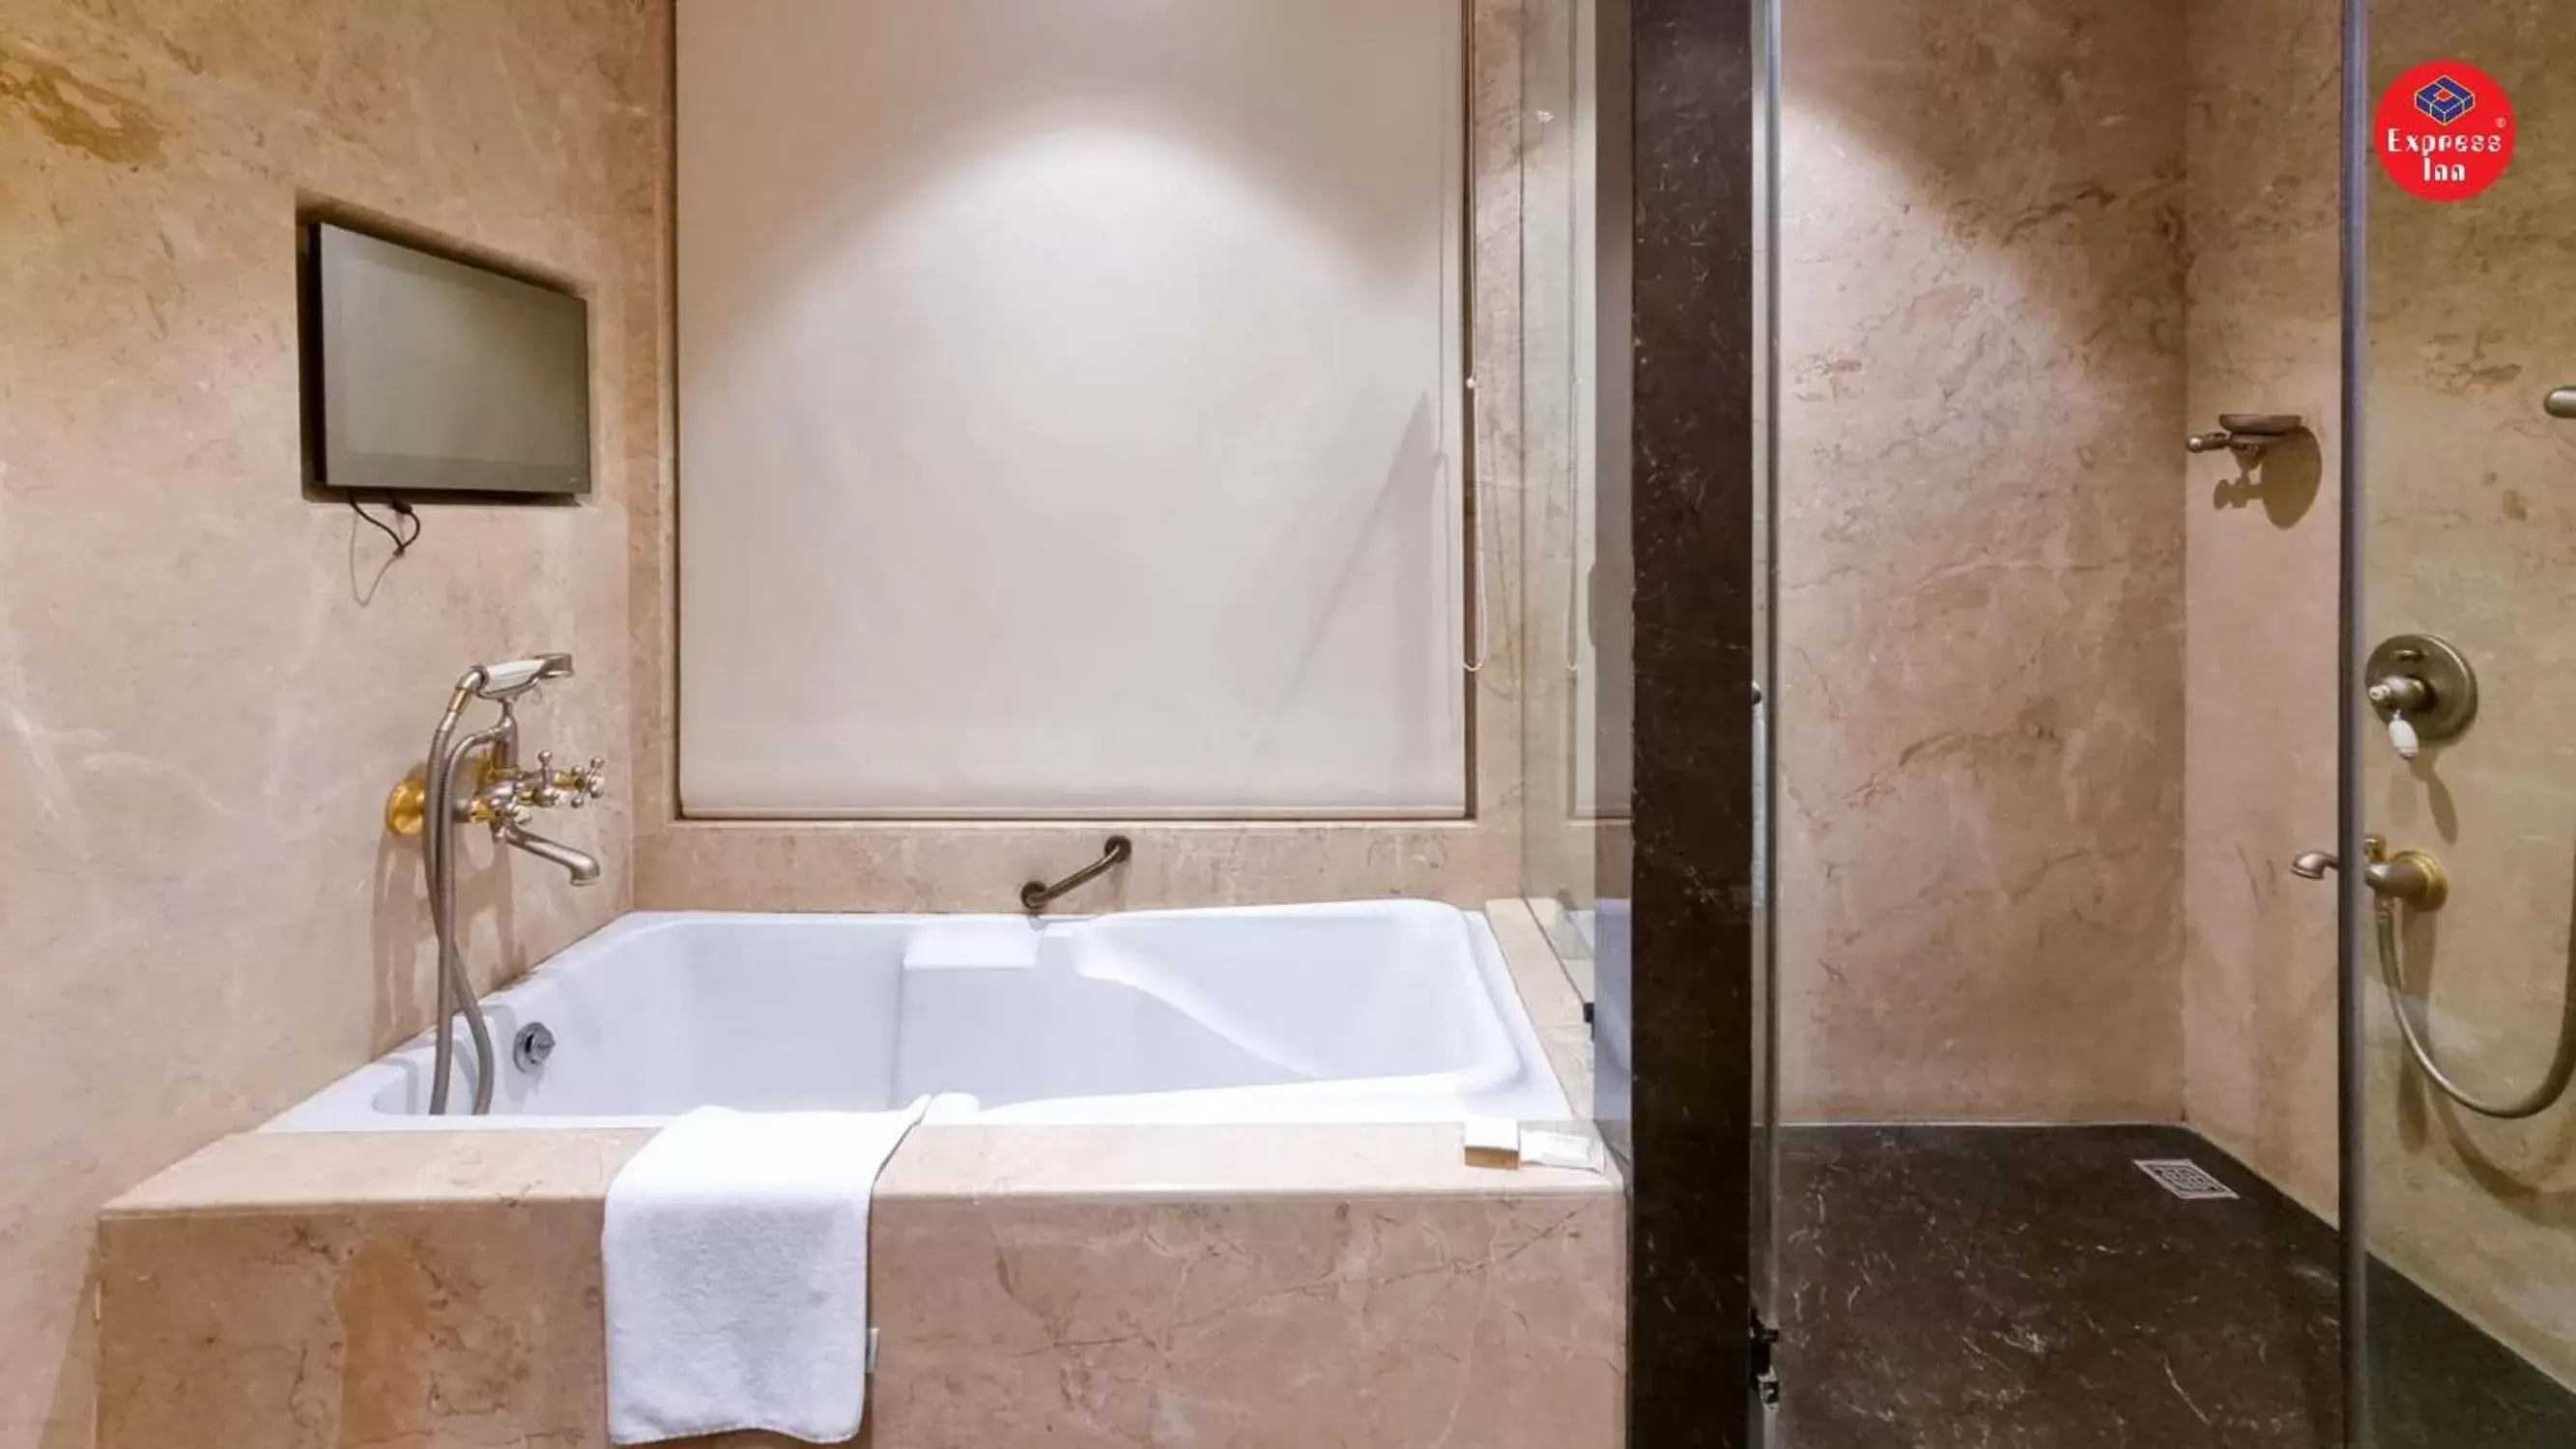 Bath, Bathroom in Express Inn The Business Luxury Hotel